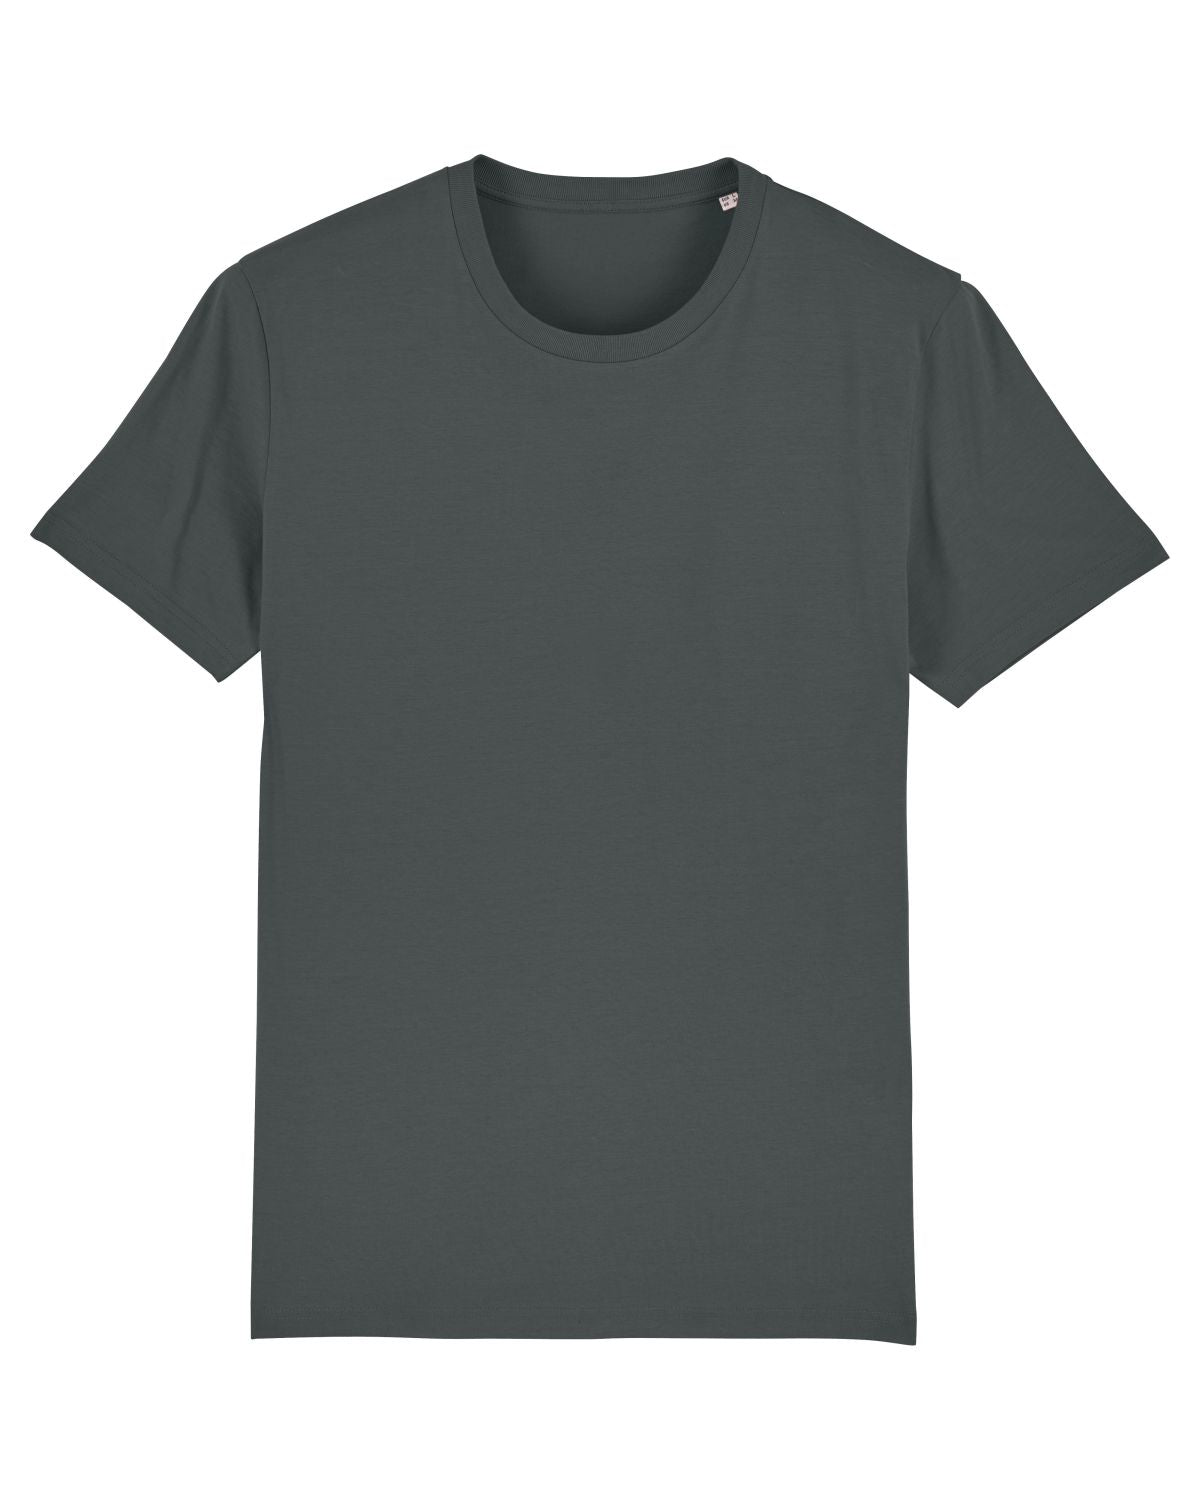 Stanley/Stella's - Creator T-shirt - Anthracite